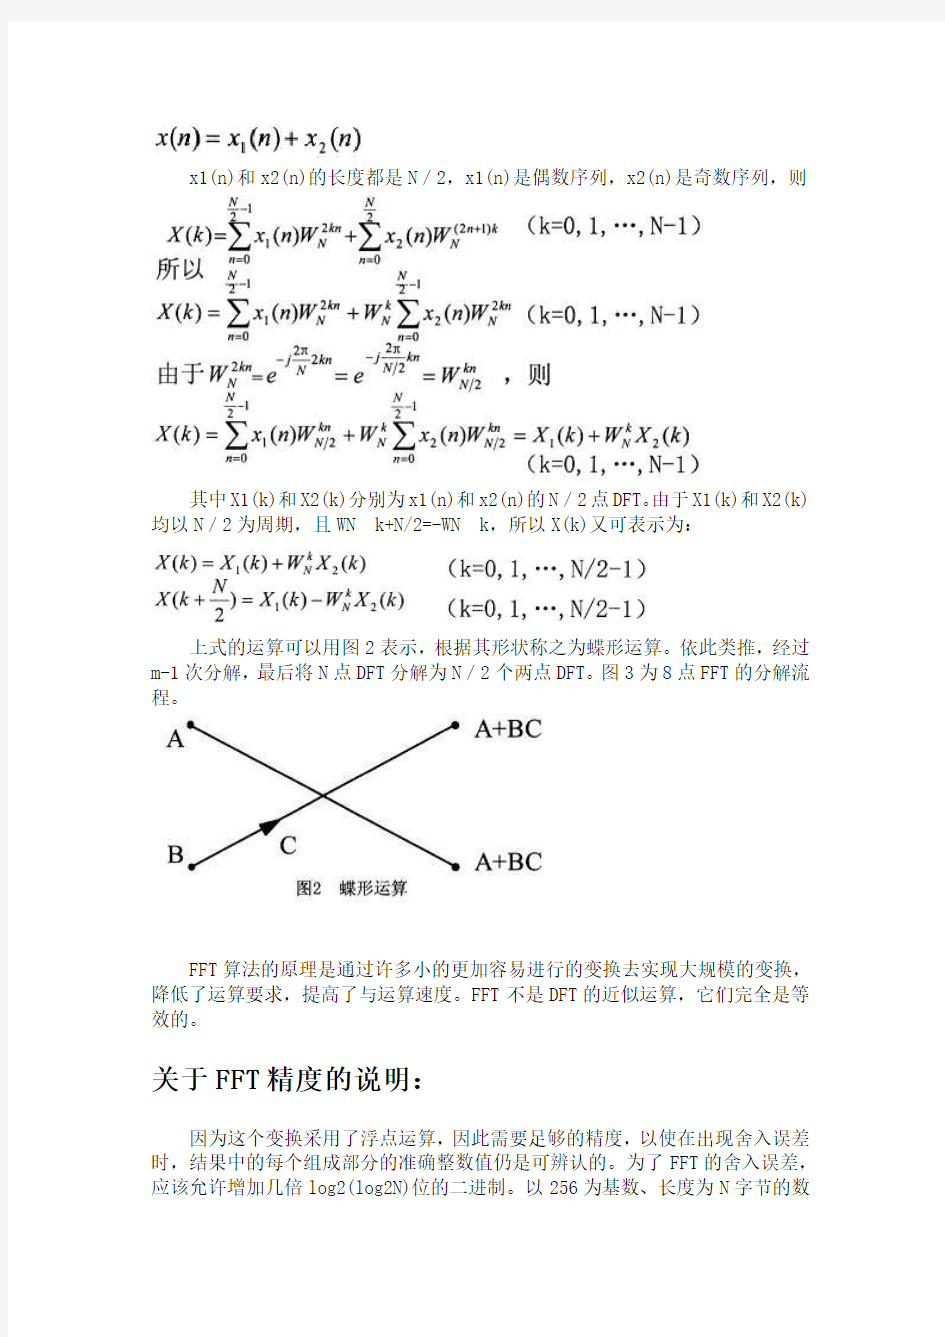 快速傅里叶变换(FFT)的原理及公式